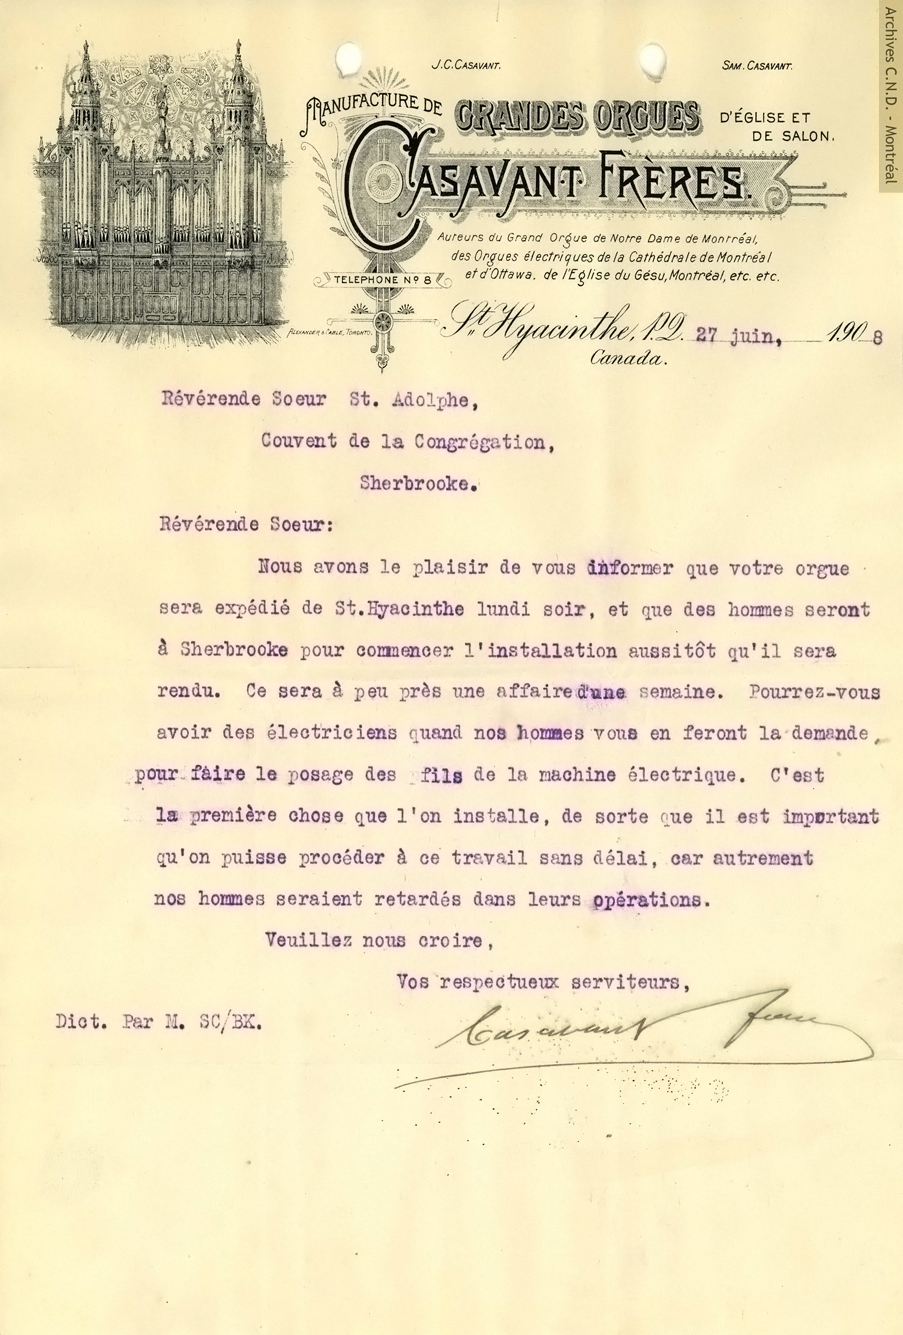 Lettre des frères Casavant concernant l'expédition de l'orgue commandé pour la chapelle du collège Mont Notre-Dame